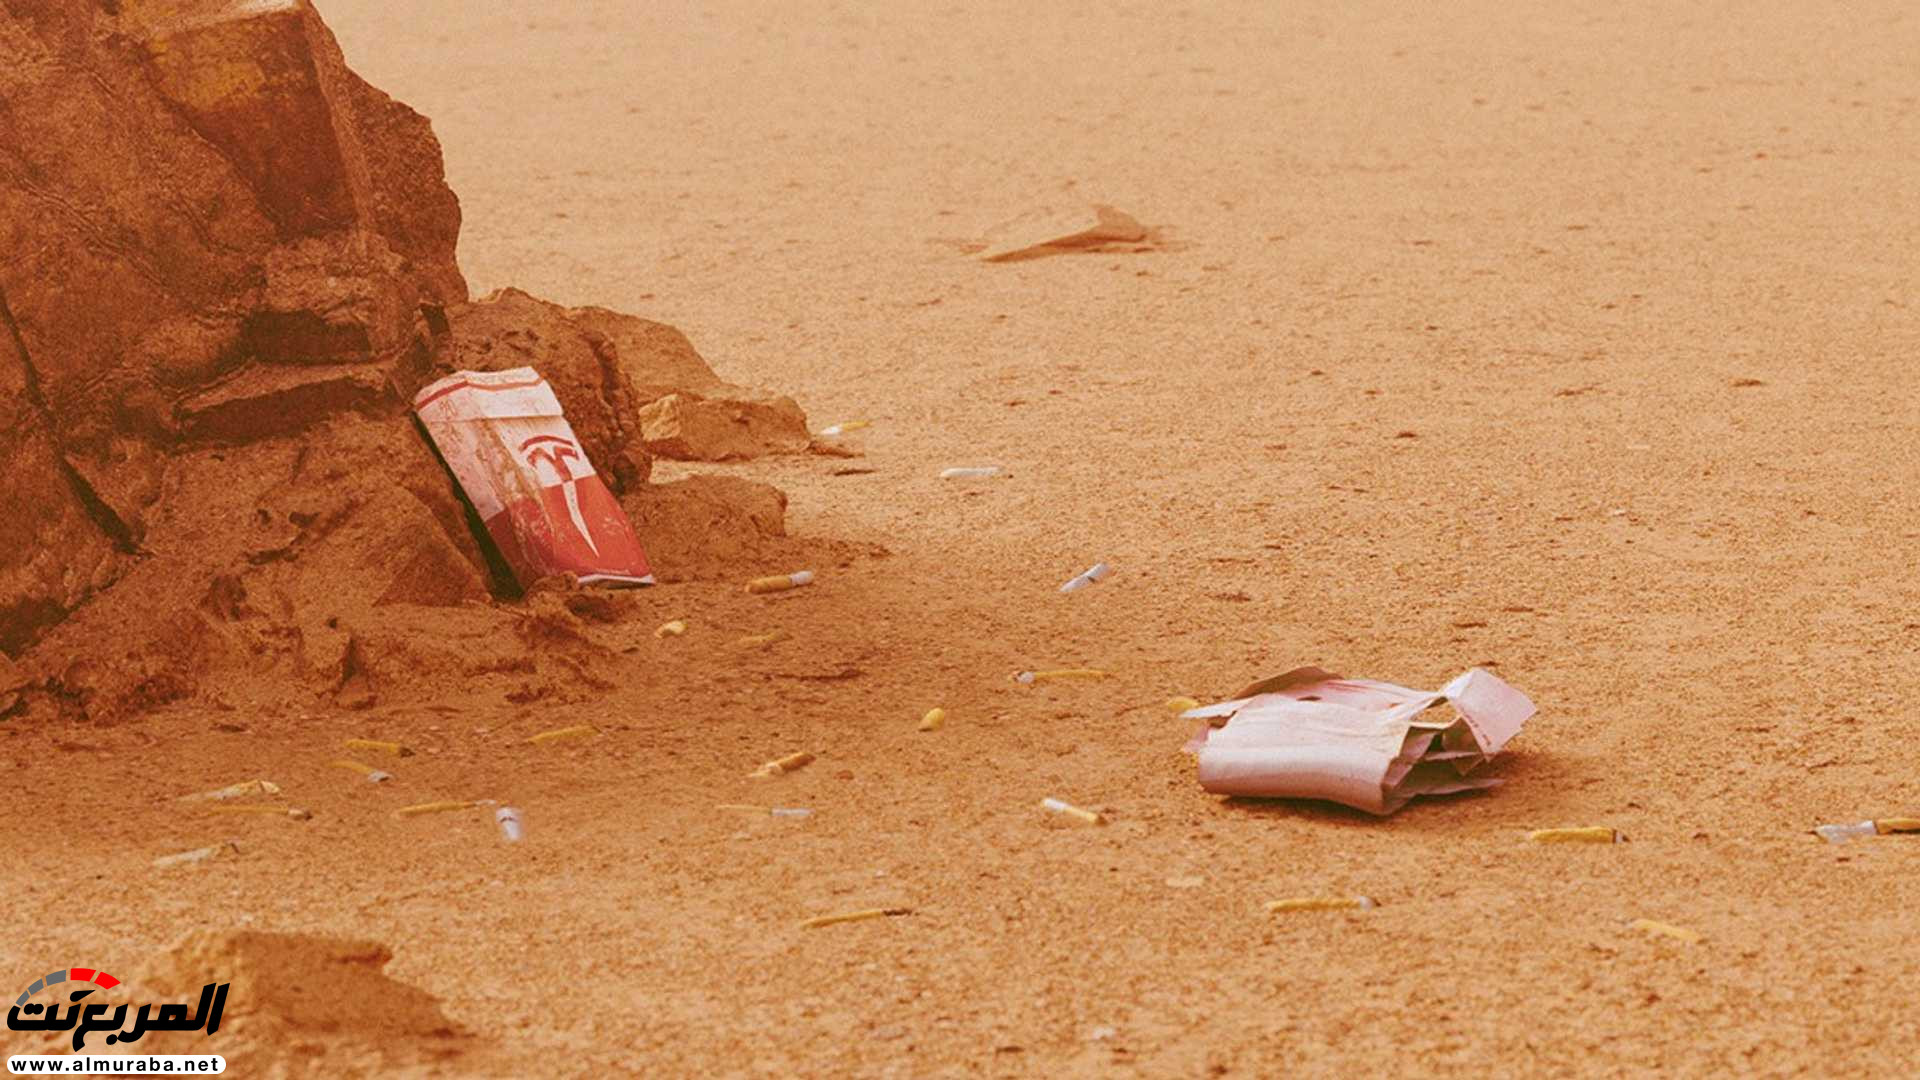 تيسلا رودستر وصلت إلى المريخ في صور تخيلية 3